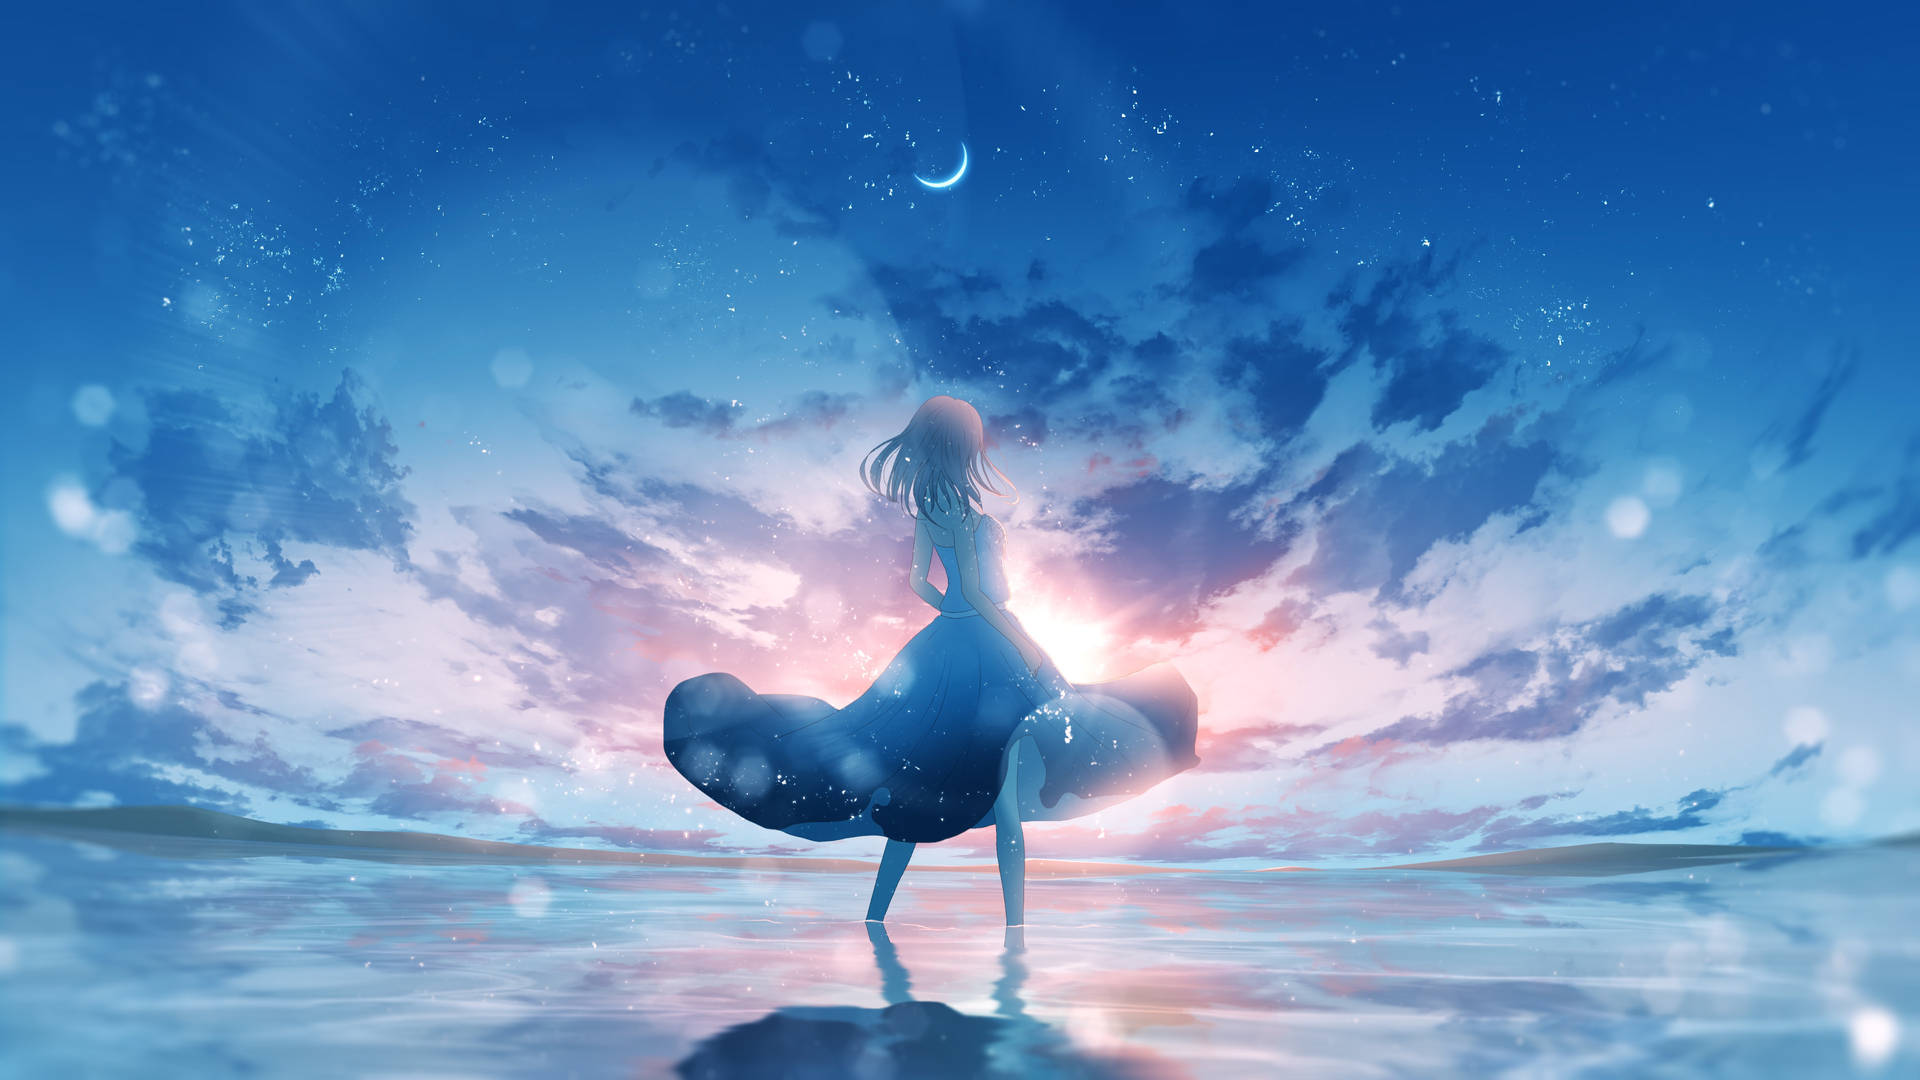 Trong bức ảnh 4k Anime Art Blue Sky Wallpaper, bạn sẽ cảm nhận được sự mê hoặc của đường nét vẽ và sự hoàn hảo về độ phân giải của bức ảnh. Hãy thưởng thức khoảnh khắc thoải mái trước bầu trời xanh trong anime phong cảnh.